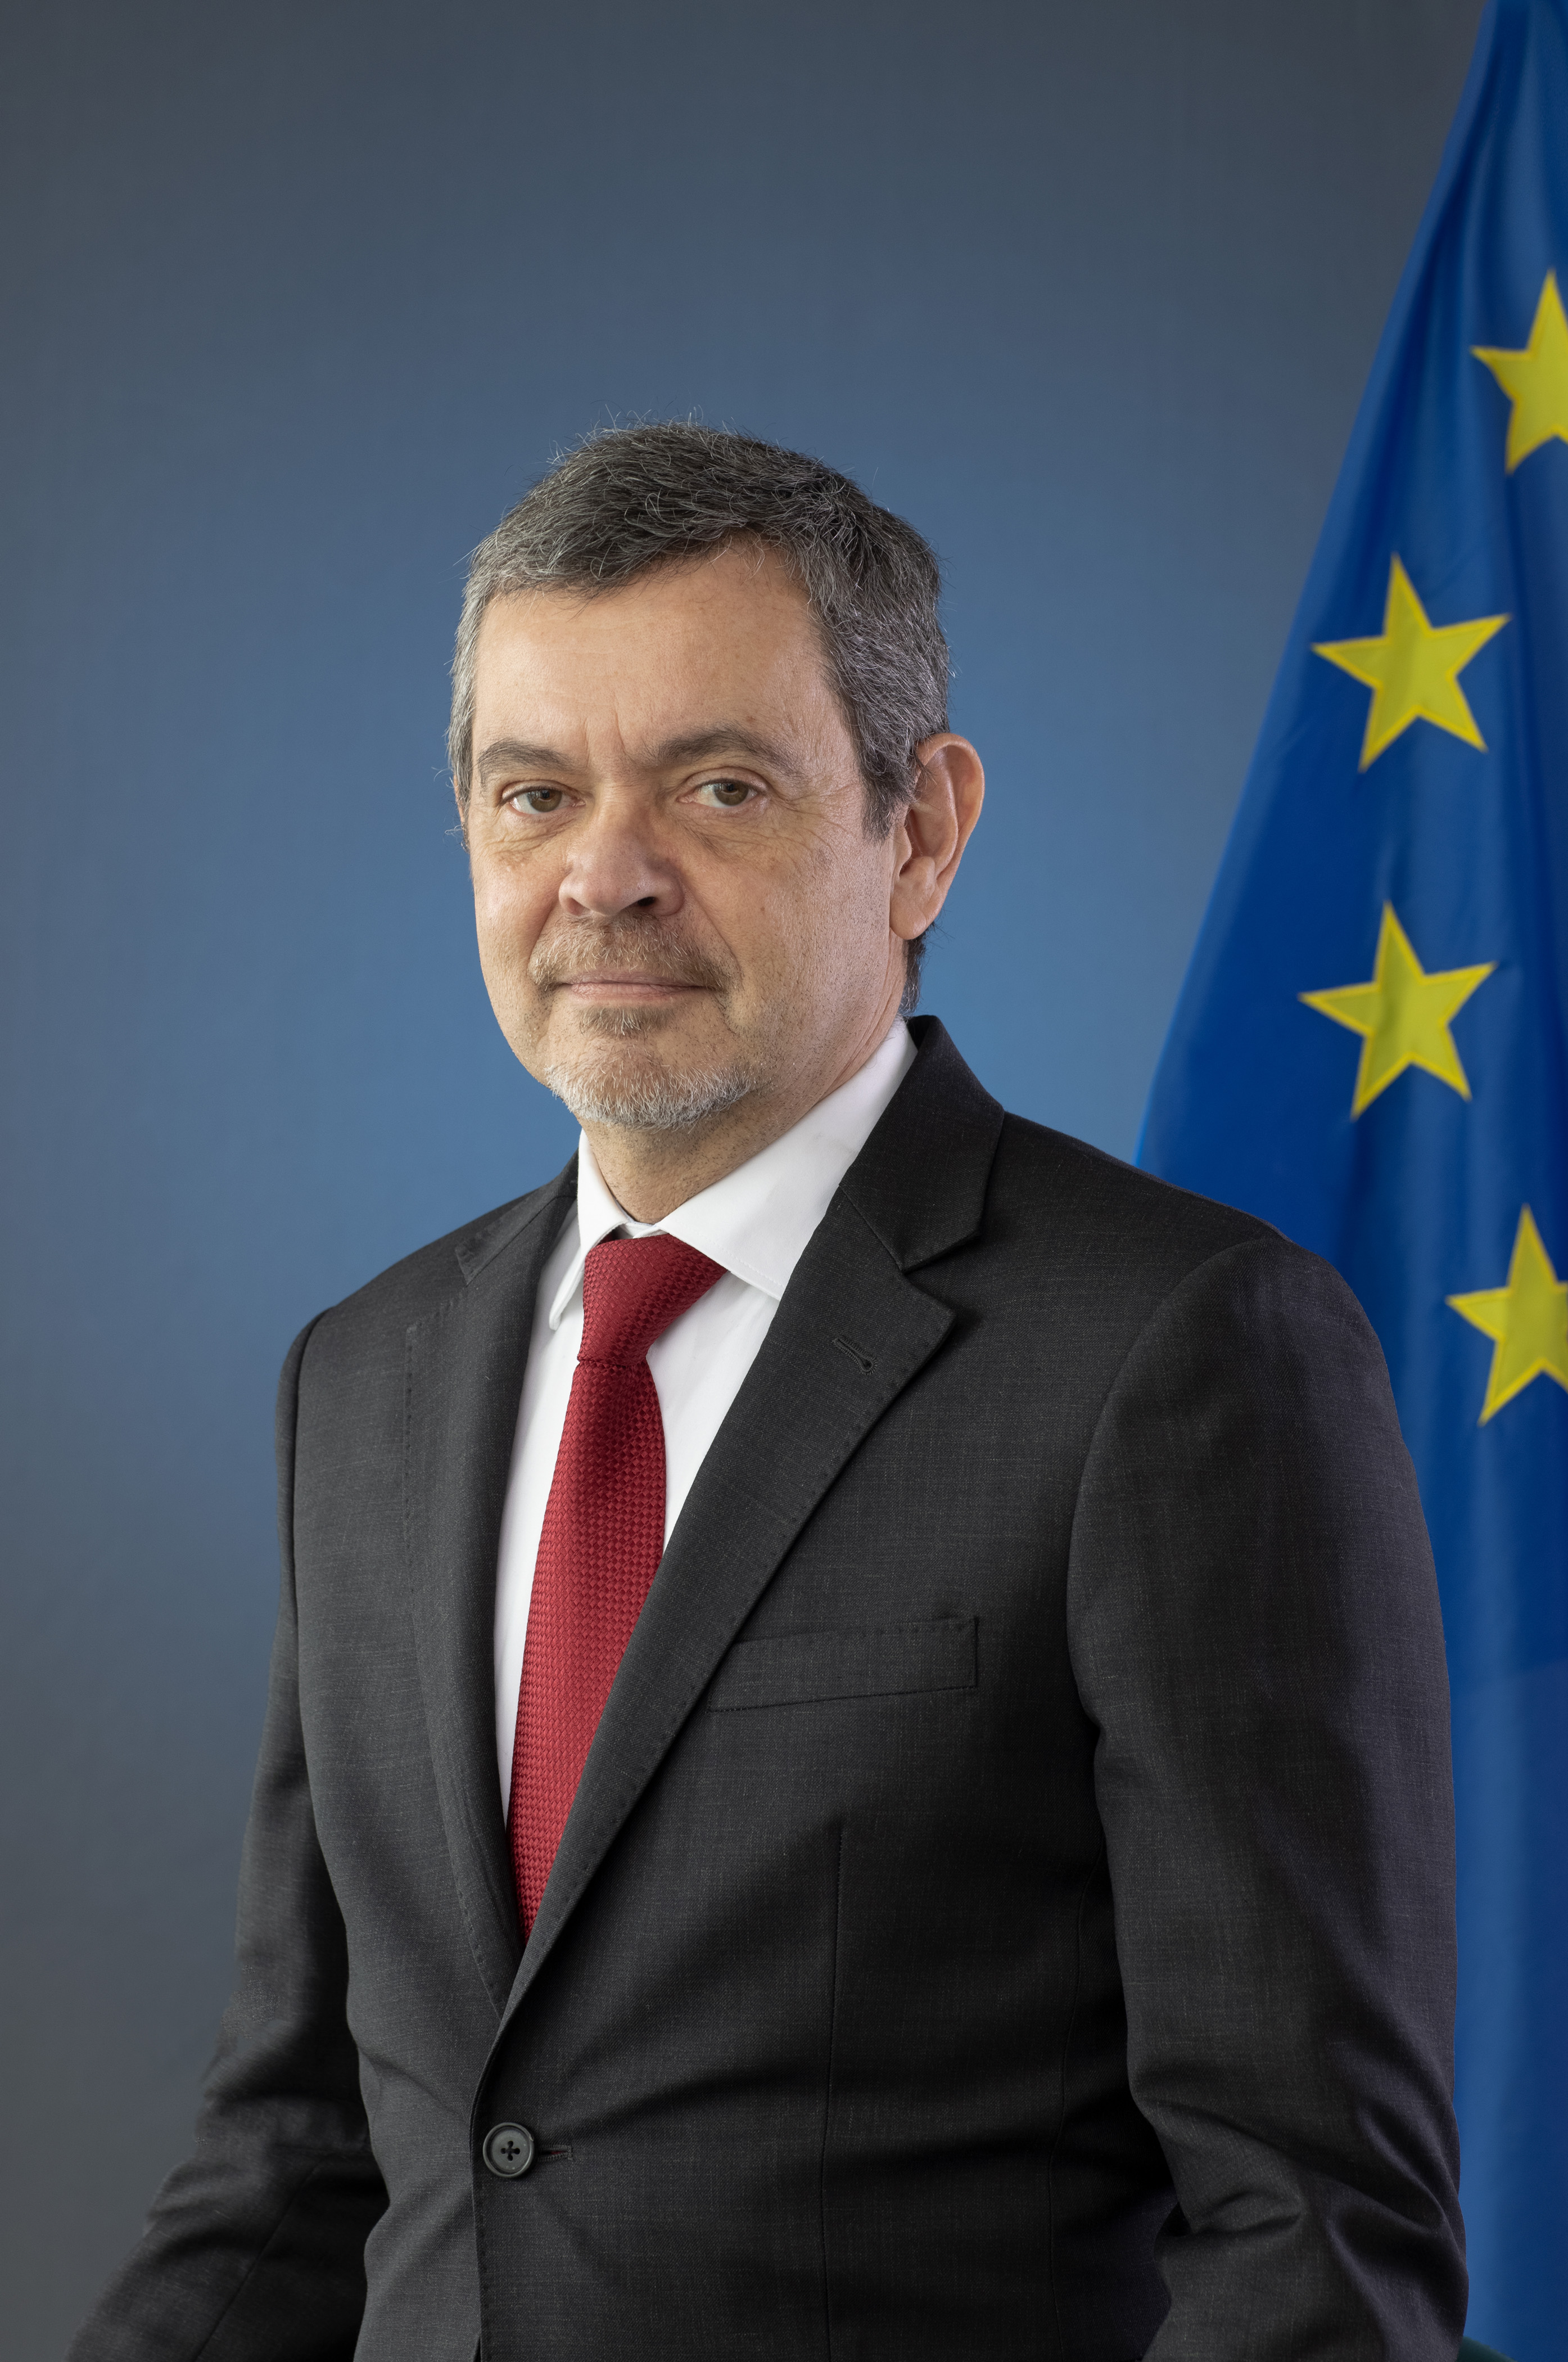 Photograph of European Prosecutor for Portugal Jose Guerra